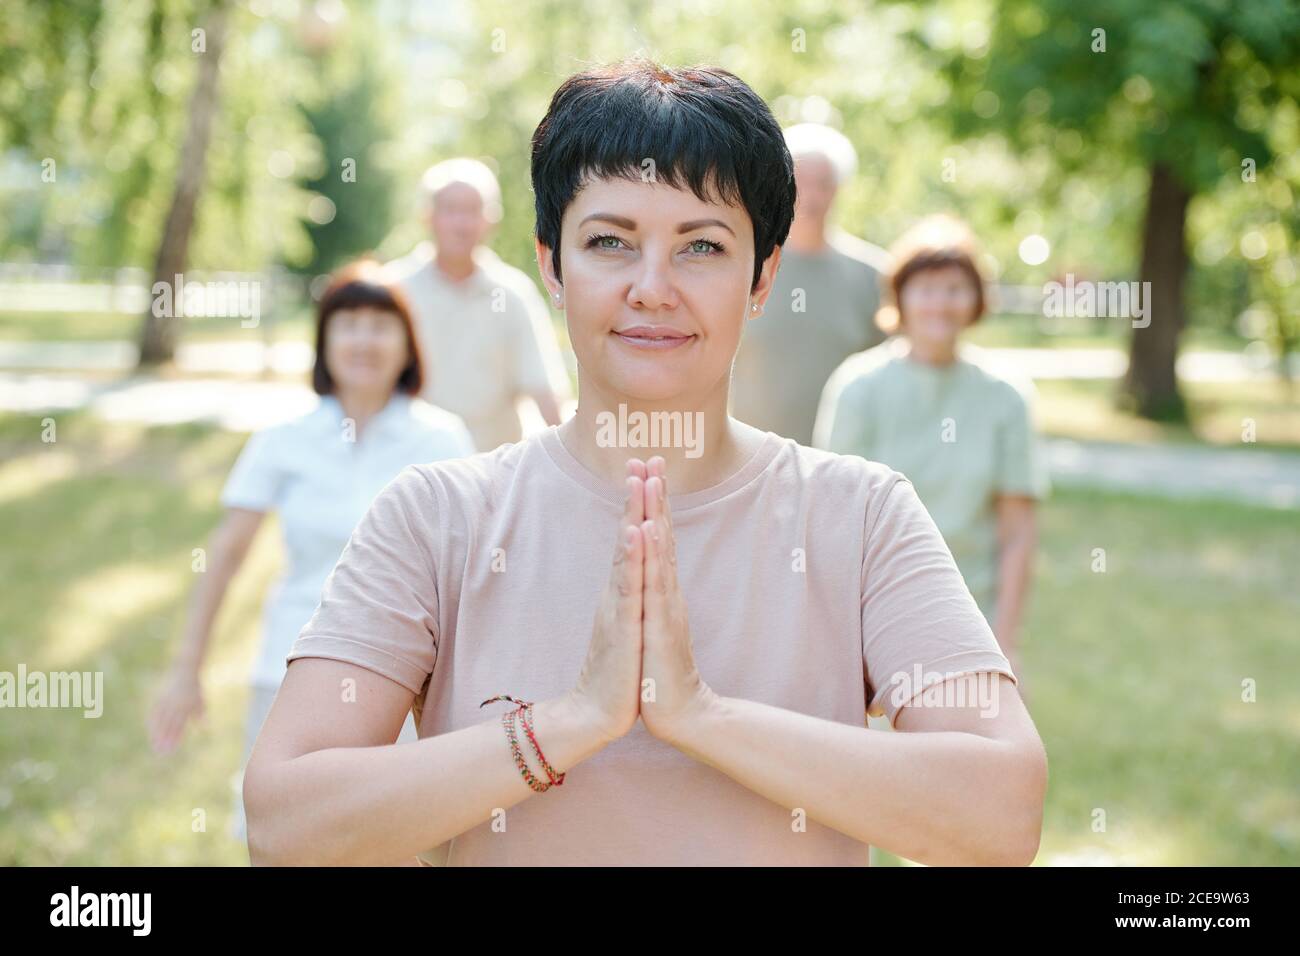 Retrato de contenido sereno instructor maduro de yoga haciendo gesto Namaste estando de pie delante de sus estudiantes en el parque Foto de stock